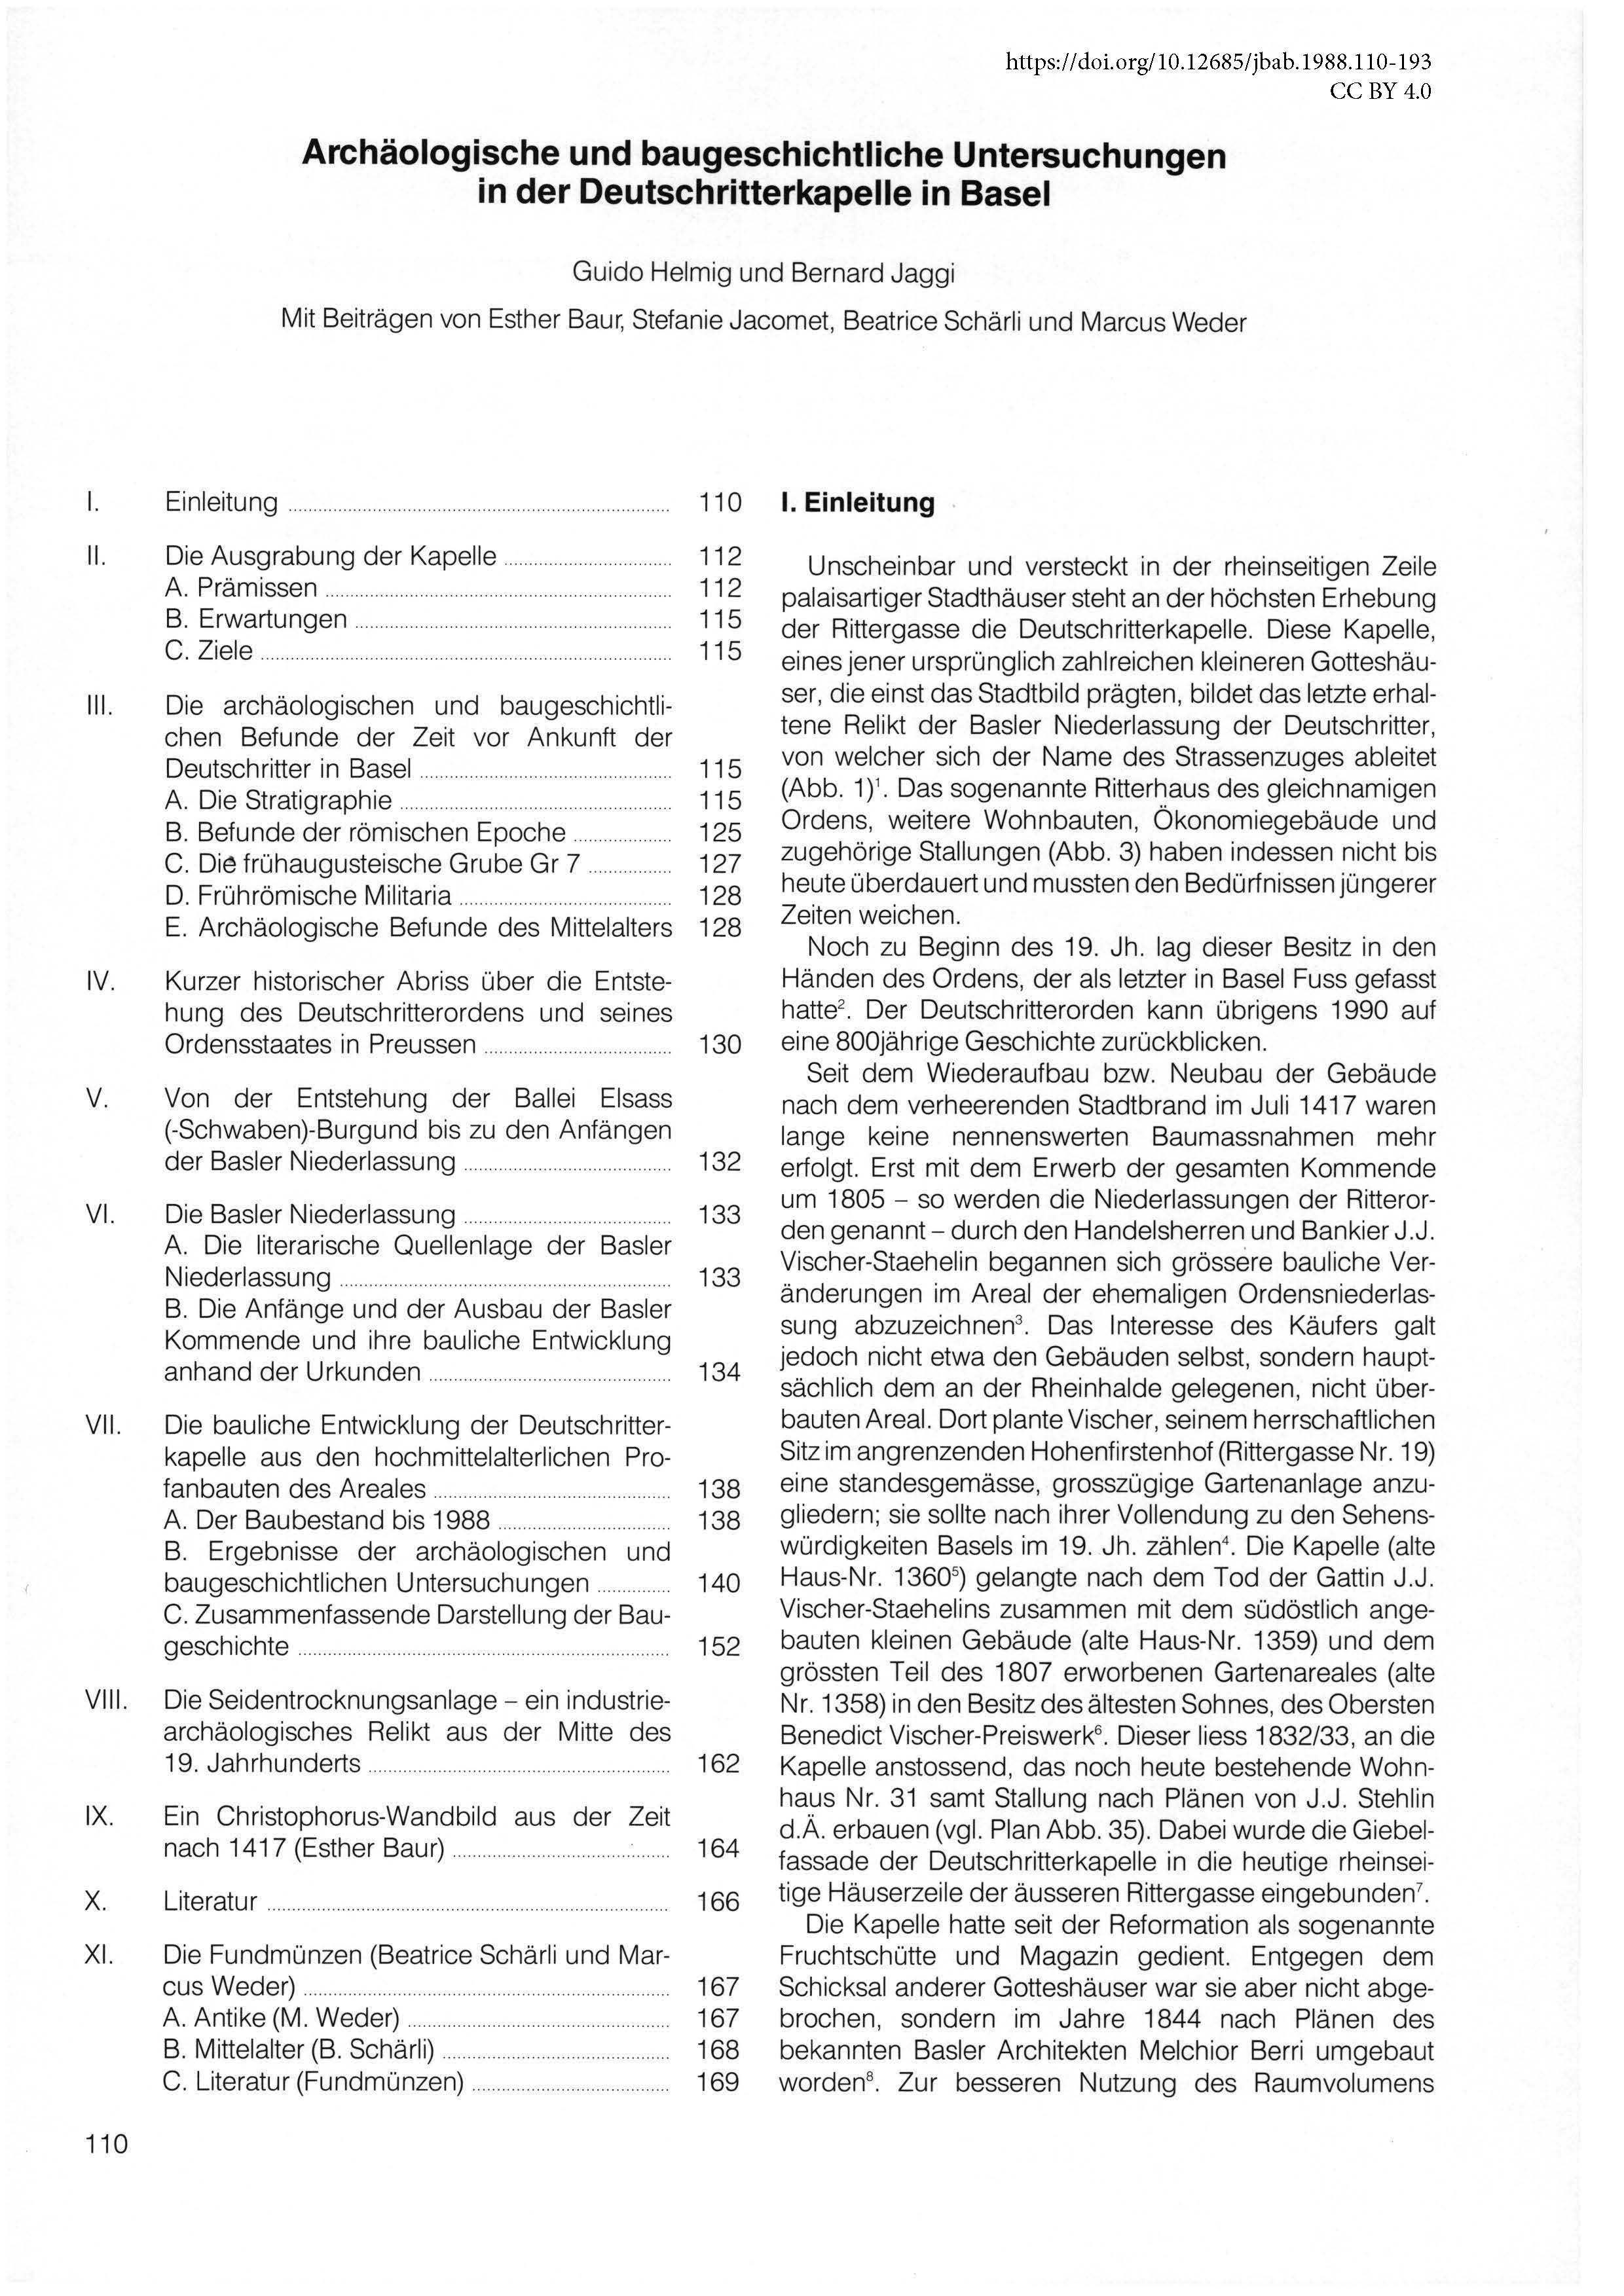 Erste Seite des Artikels über die archäologischen und baugeschichtlichen Untersuchungen in der Deutschritterkapelle